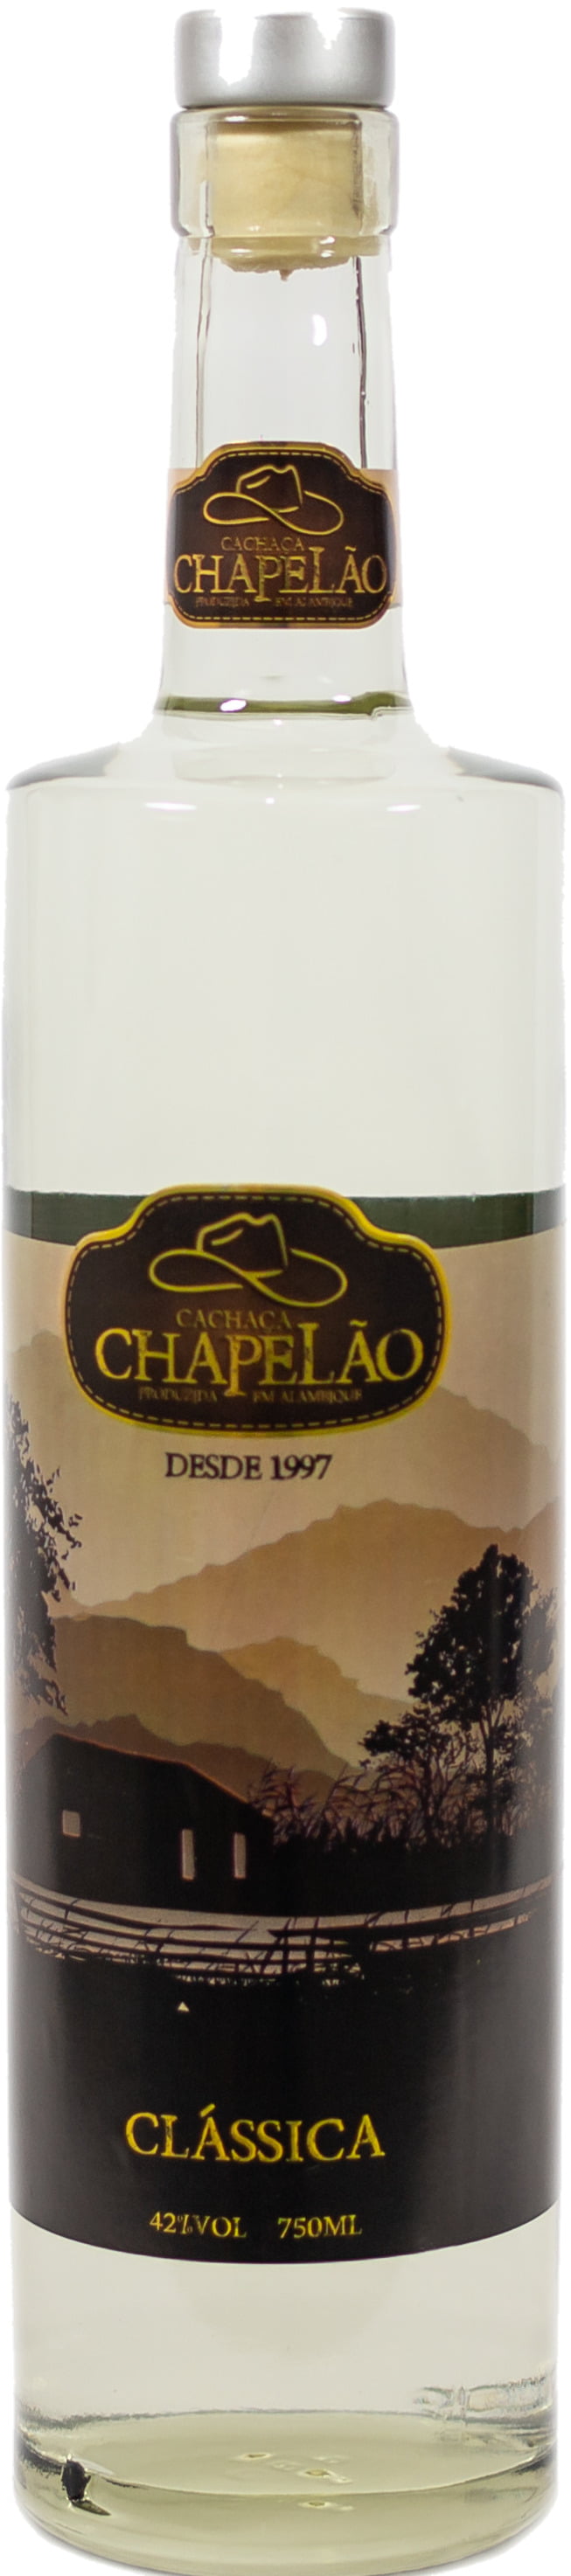 Cachaça Chapelão Classica 750 ml